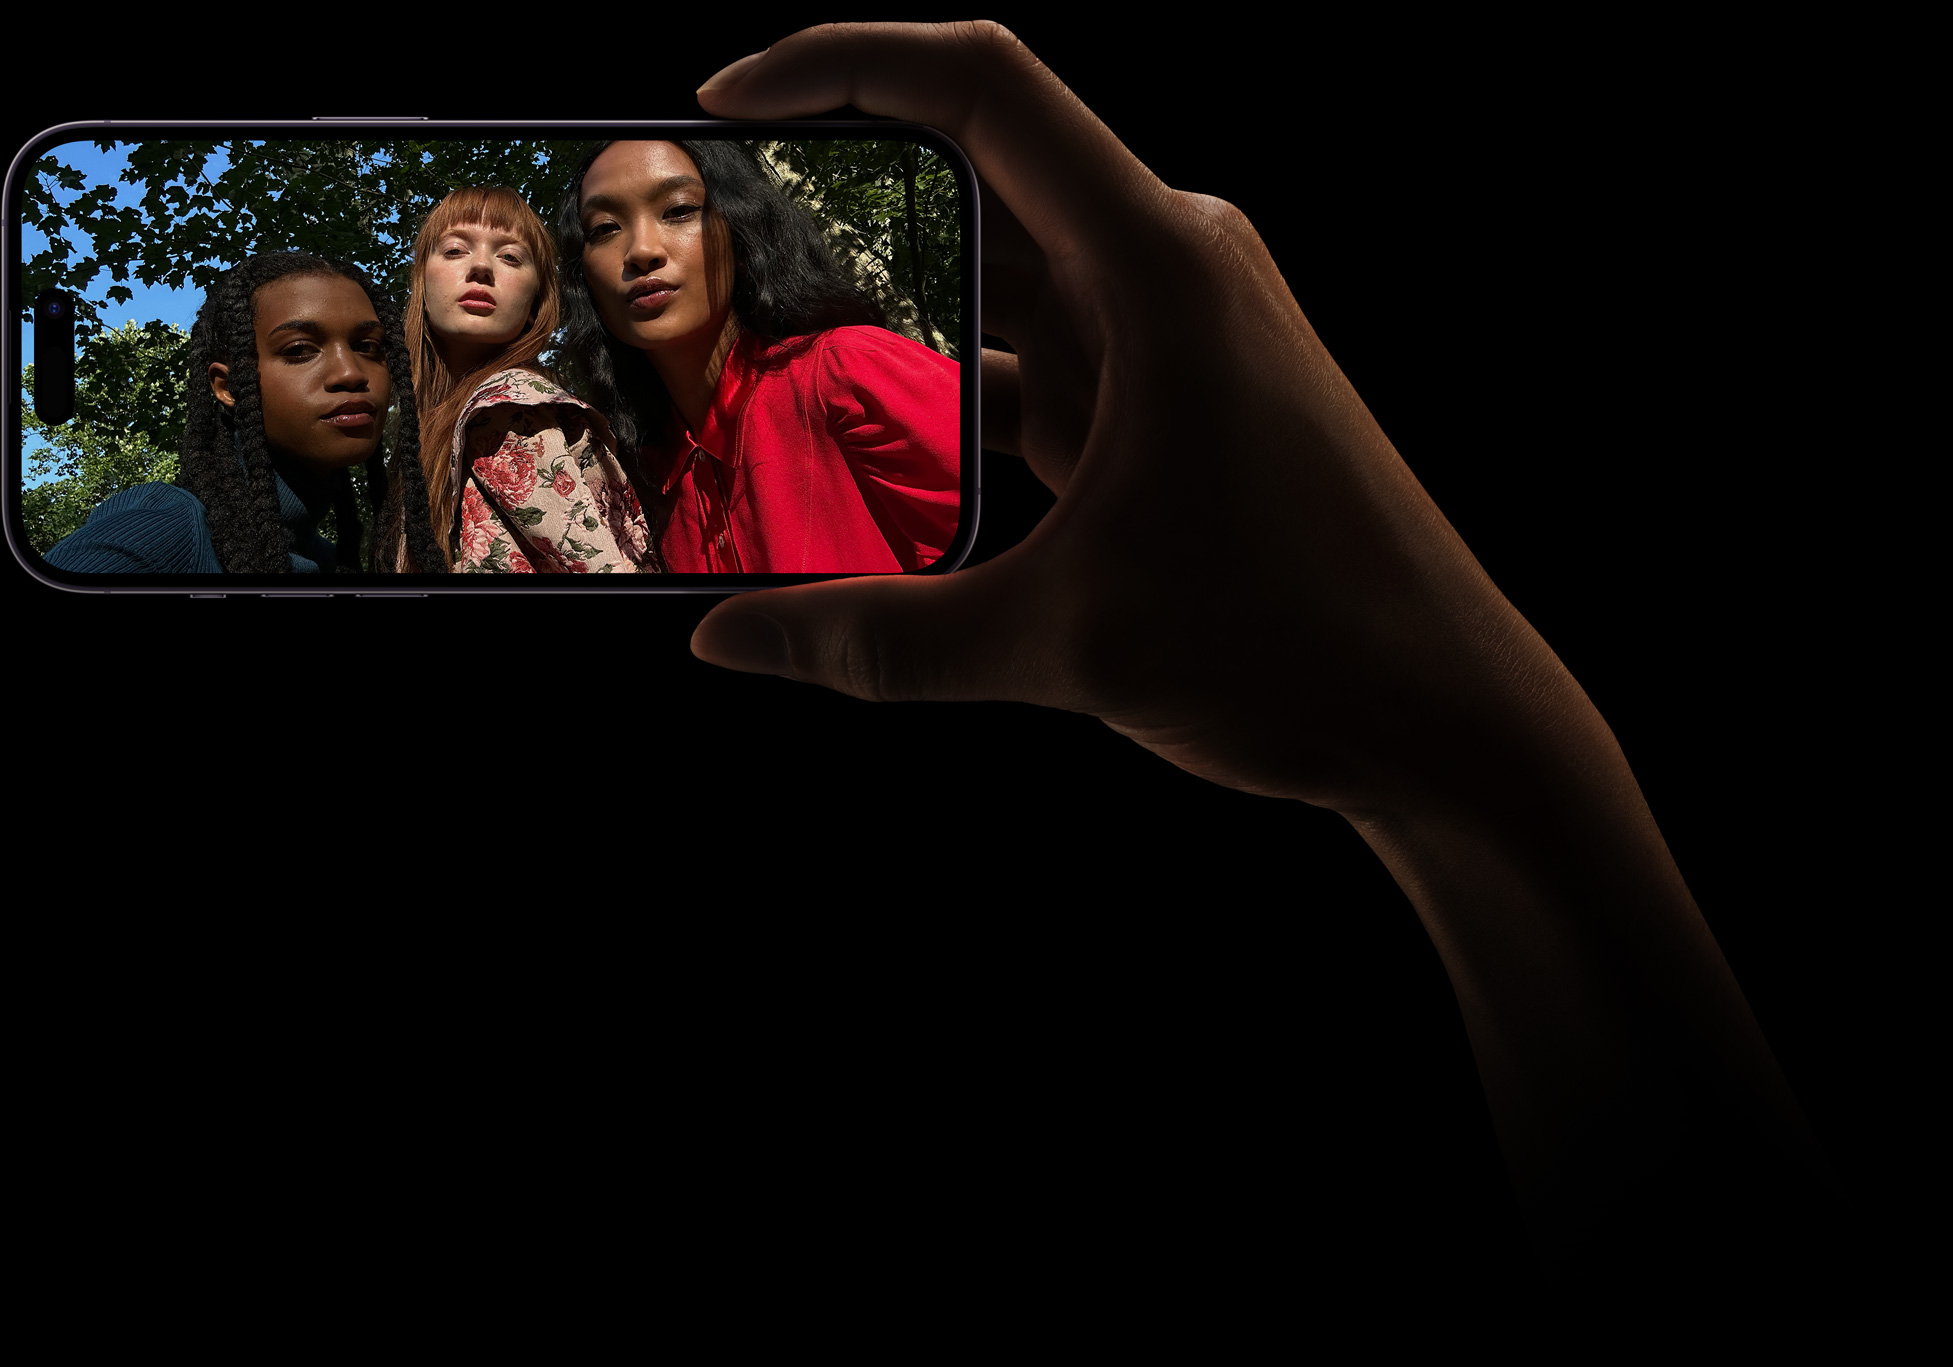 Grupowe selfie trzech kobiet zrobione aparatem TrueDepth.